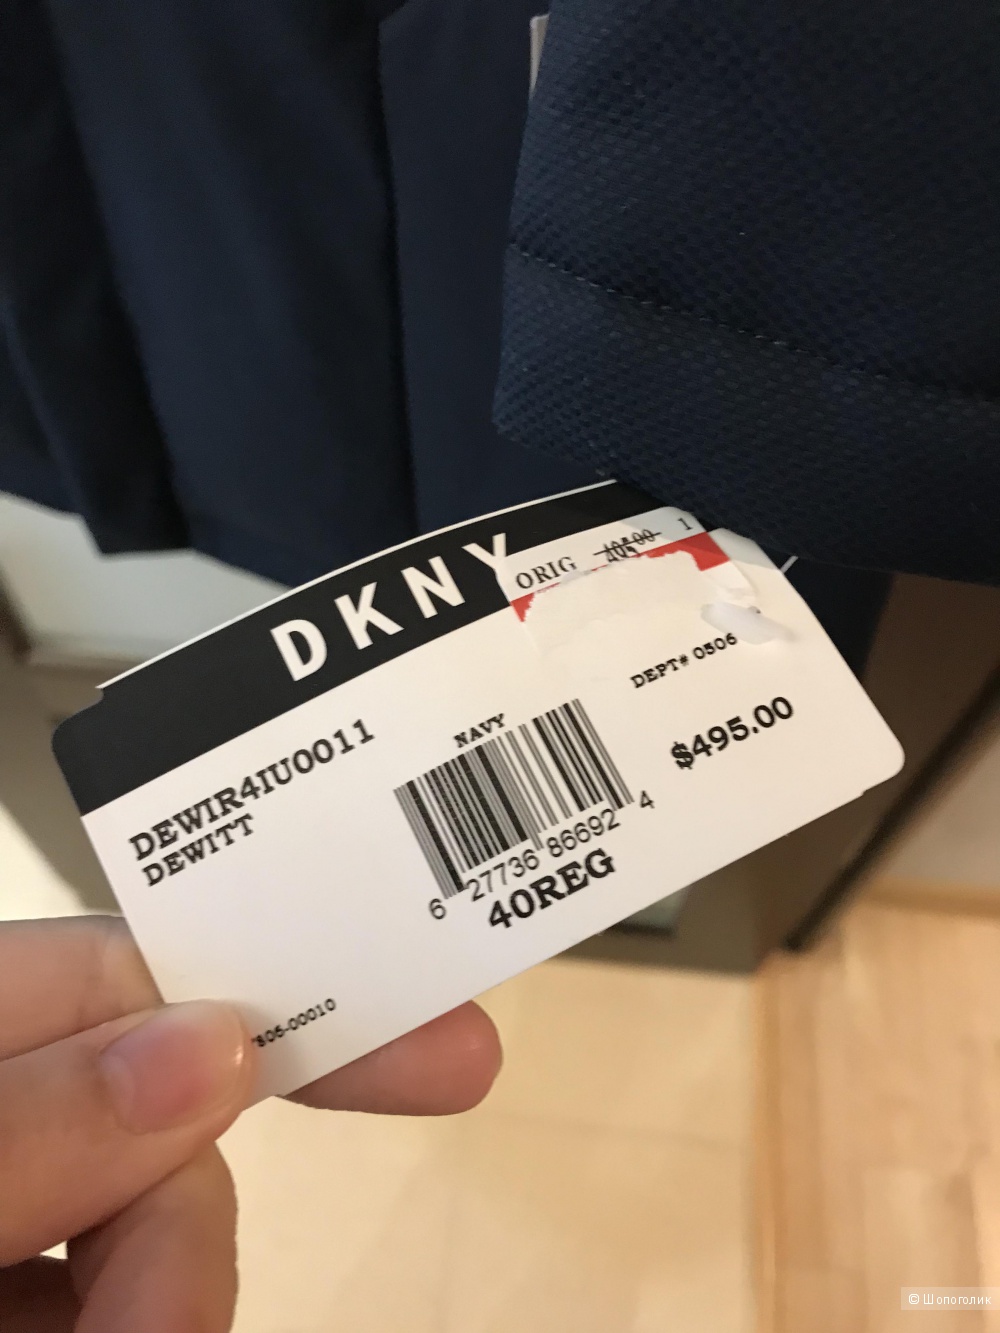 Мужское утеплённое пальто DKNY костюмный размер 40 (М)